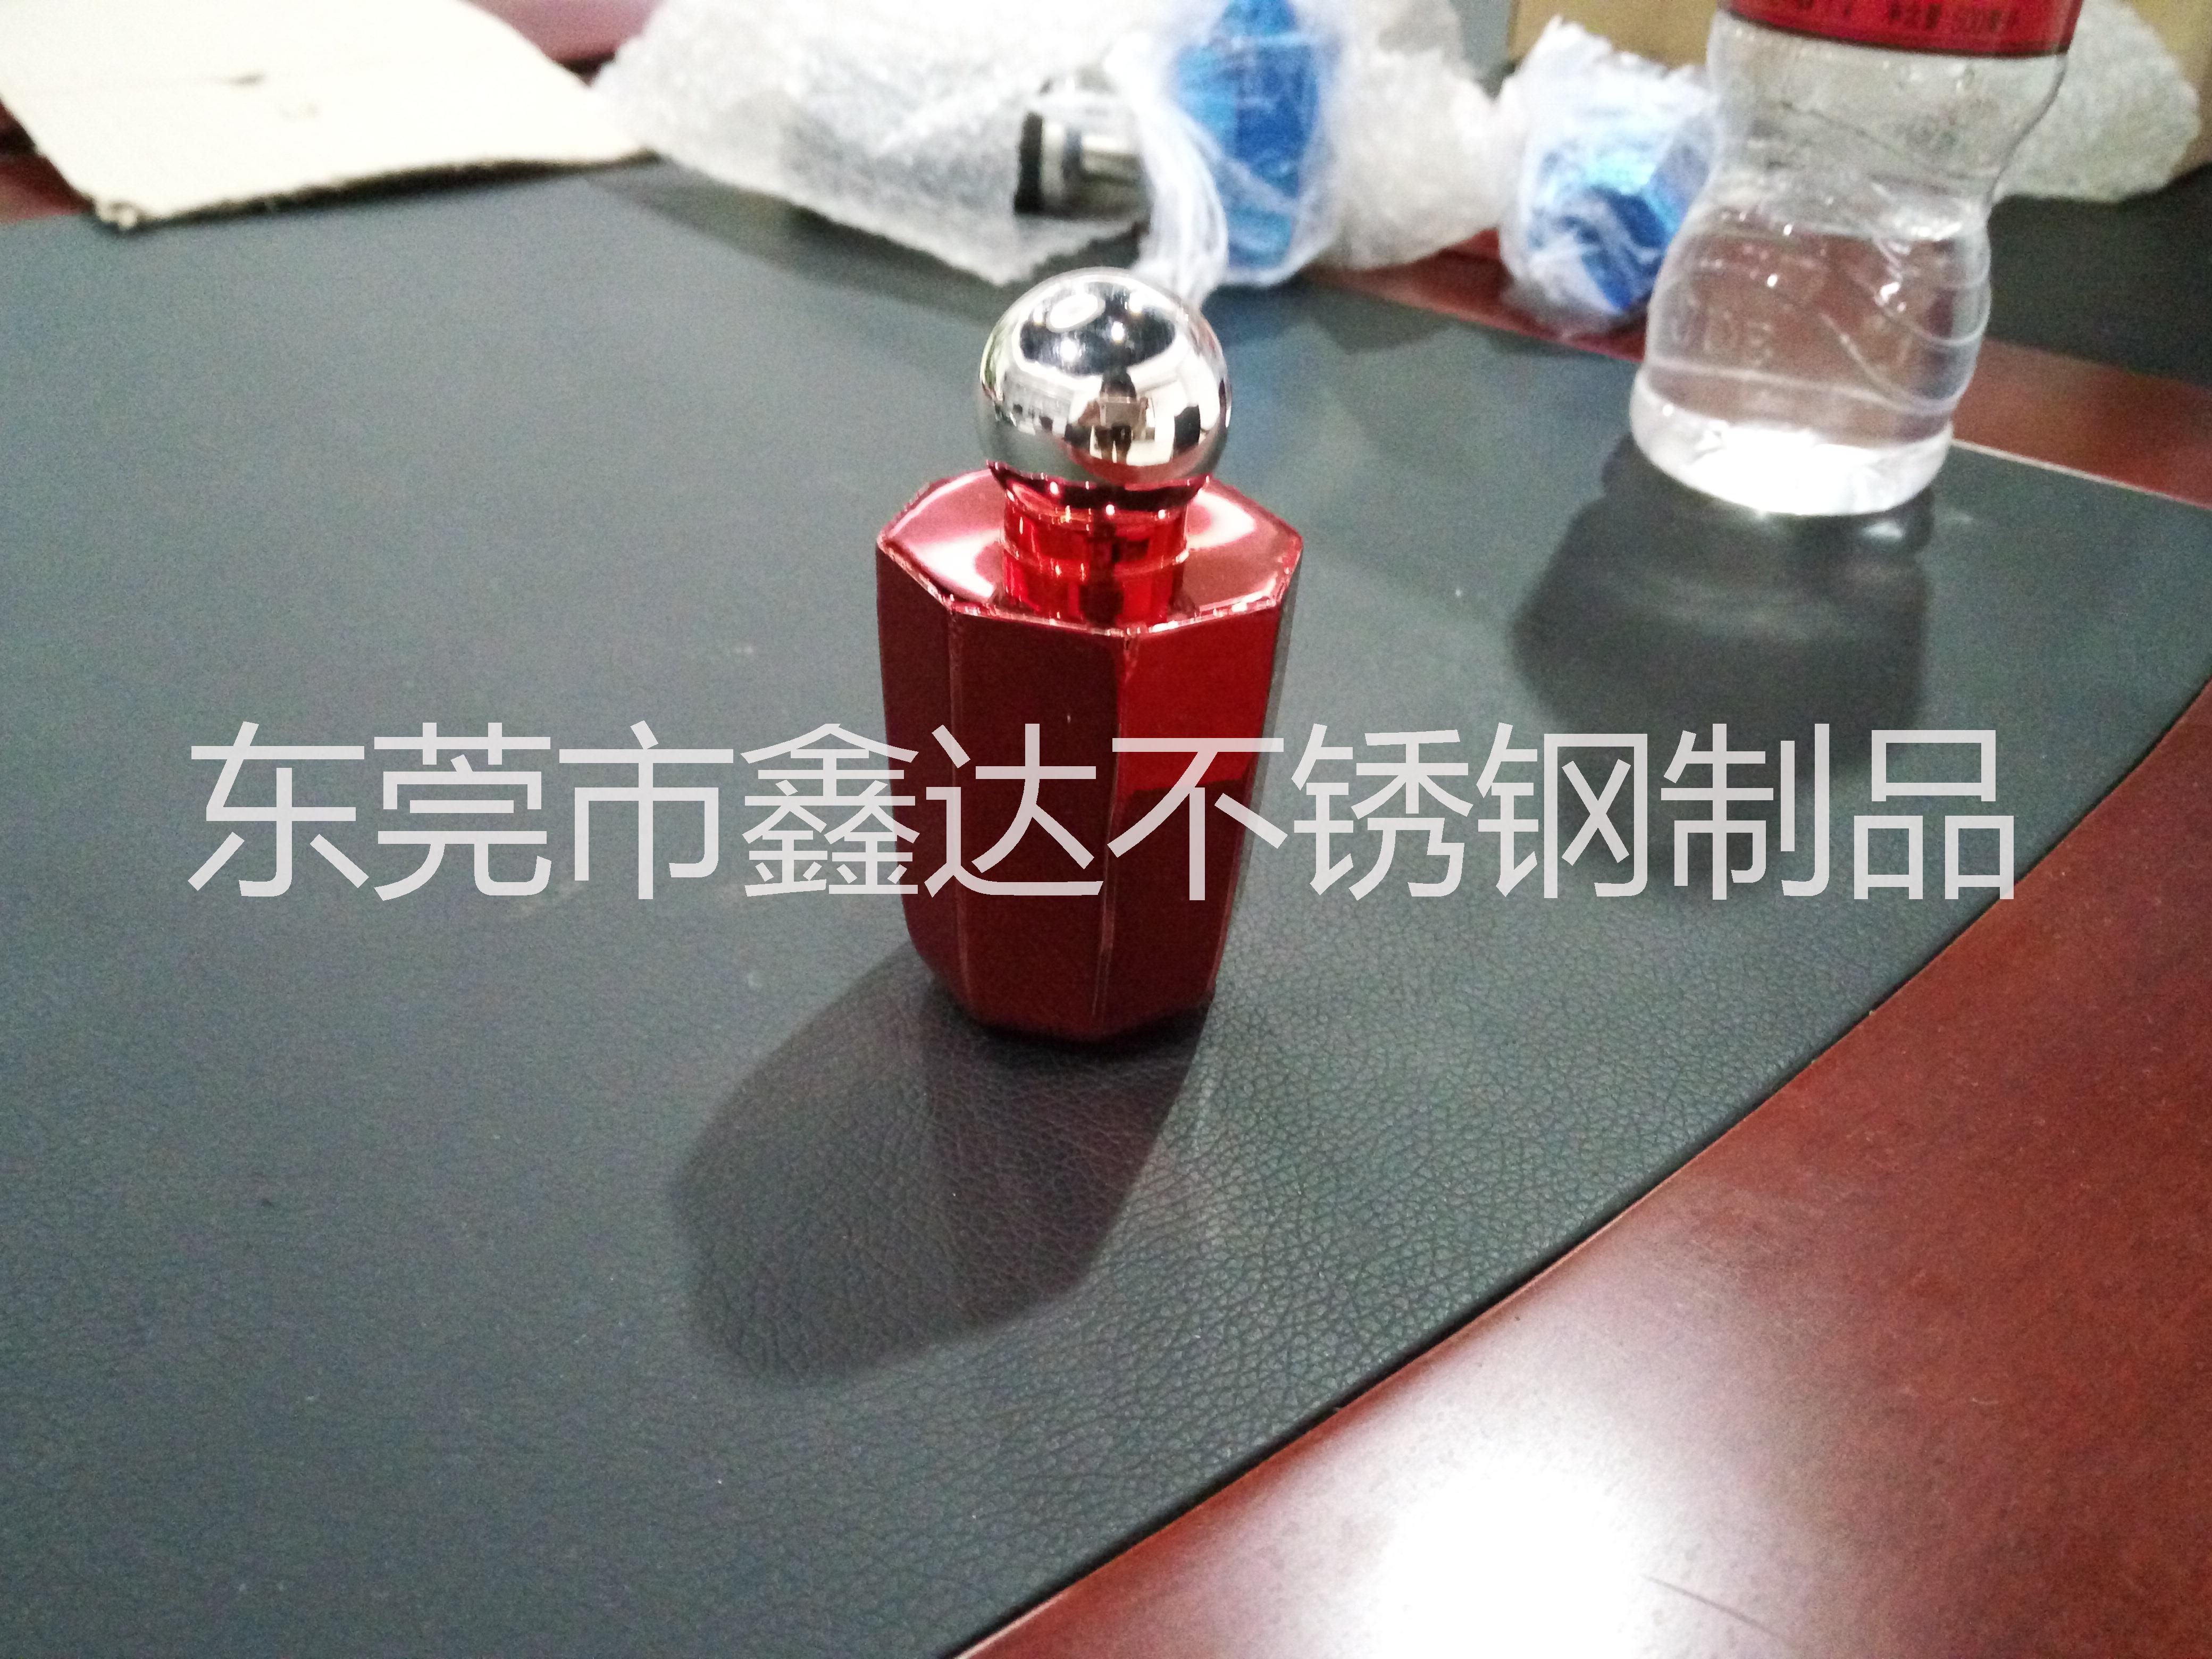 供应不锈钢香水瓶-304不锈钢香水瓶批发价格-香水瓶厂家直销